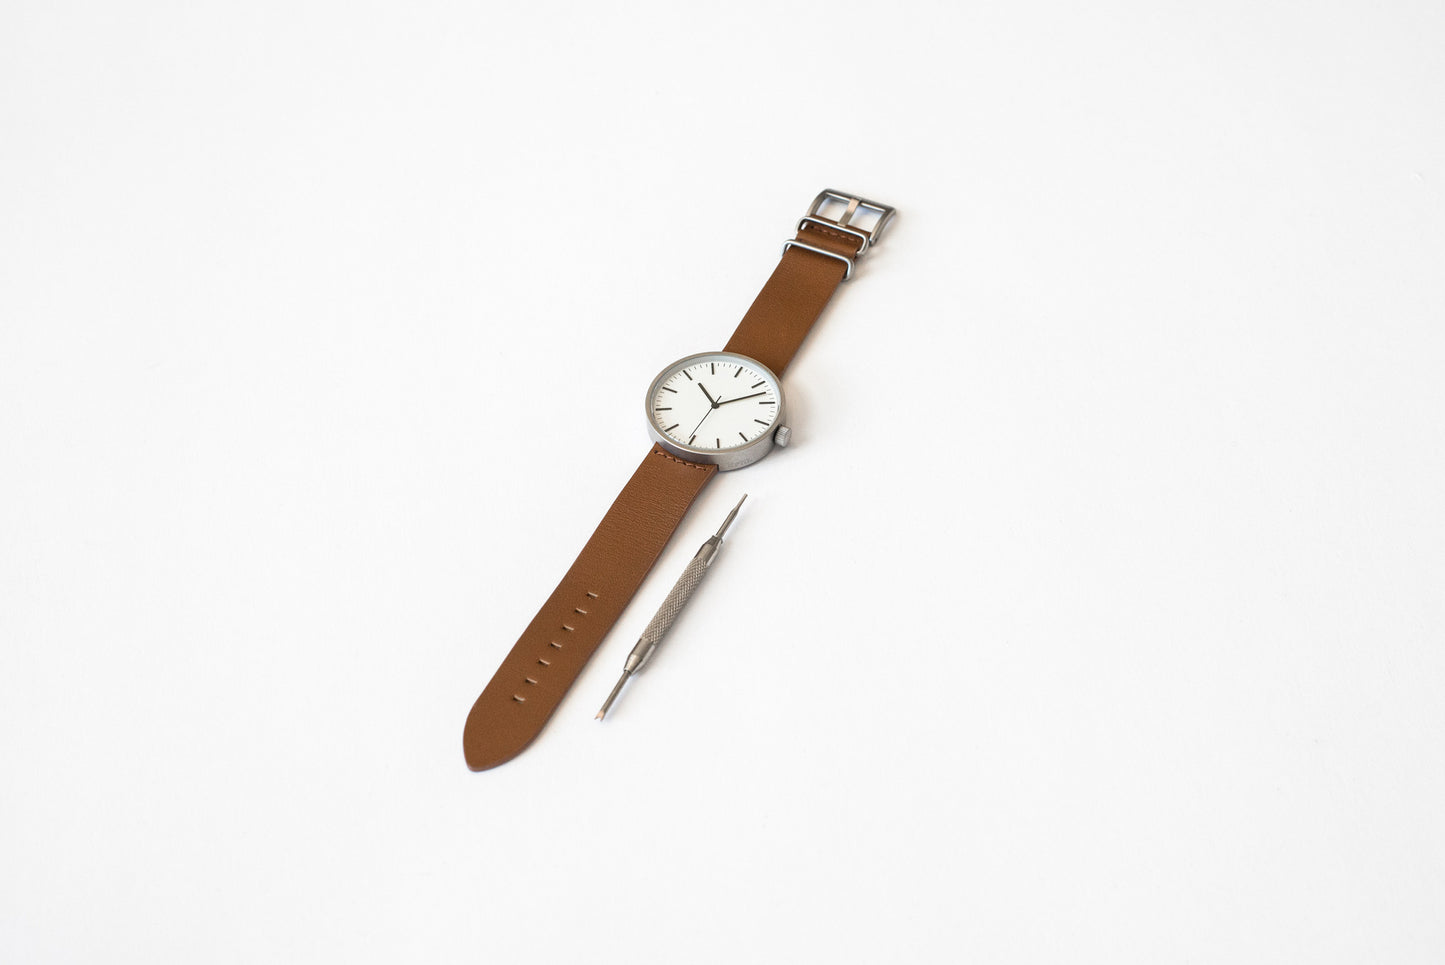 ITEM #001: Caramel Wrist Watch